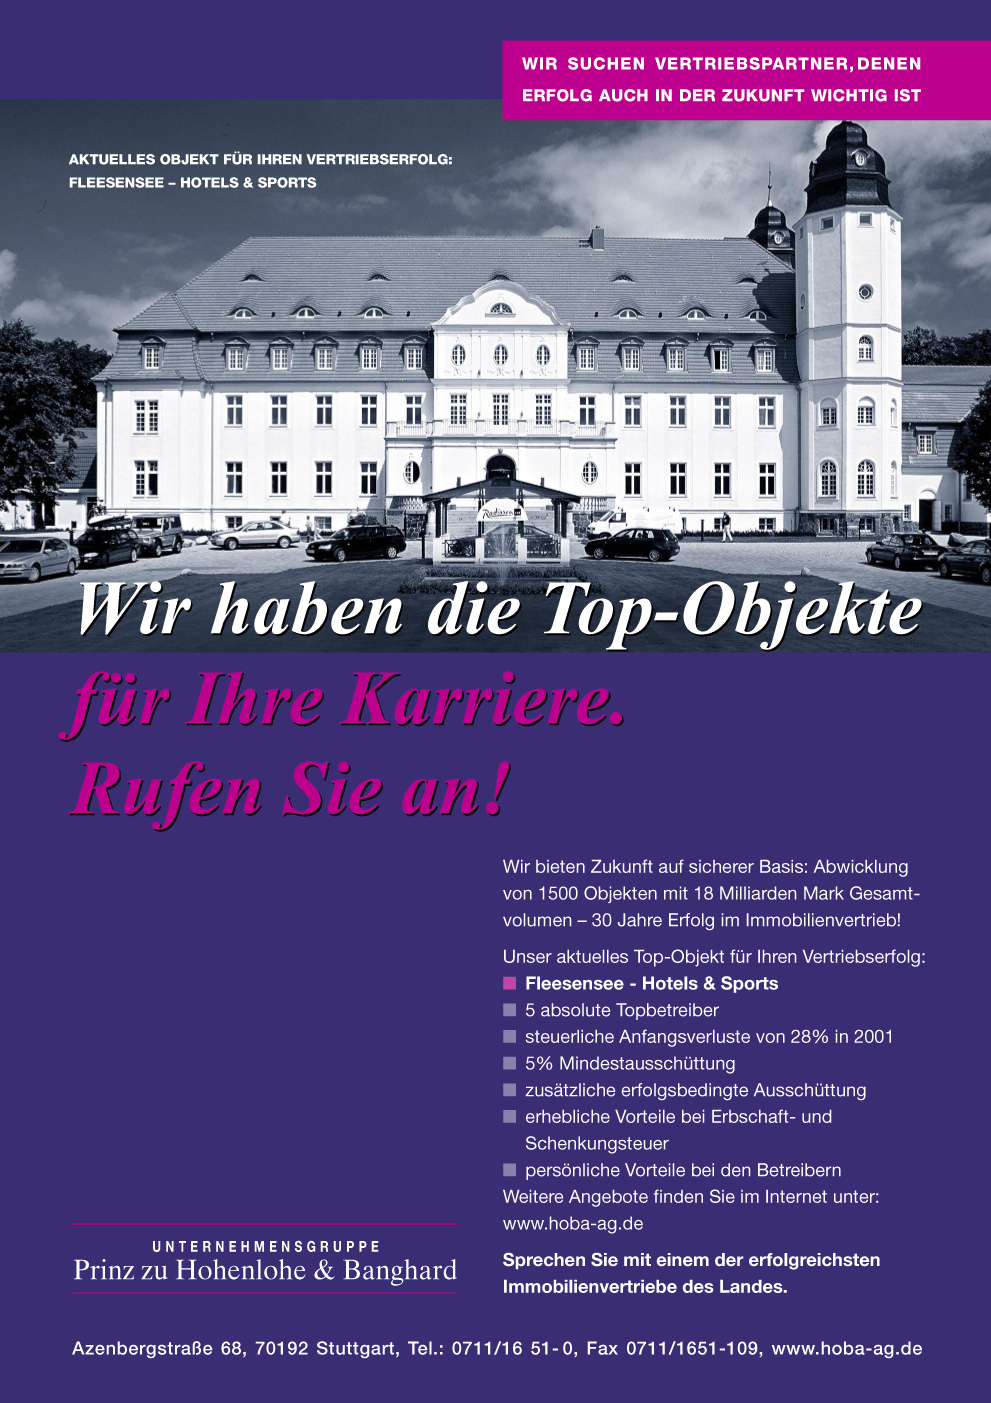 Objekt-Anzeige Abbildung Schloss, Slogan: Wir haben die Top-Objekte für Ihre Karriere. Rufen Sie an!